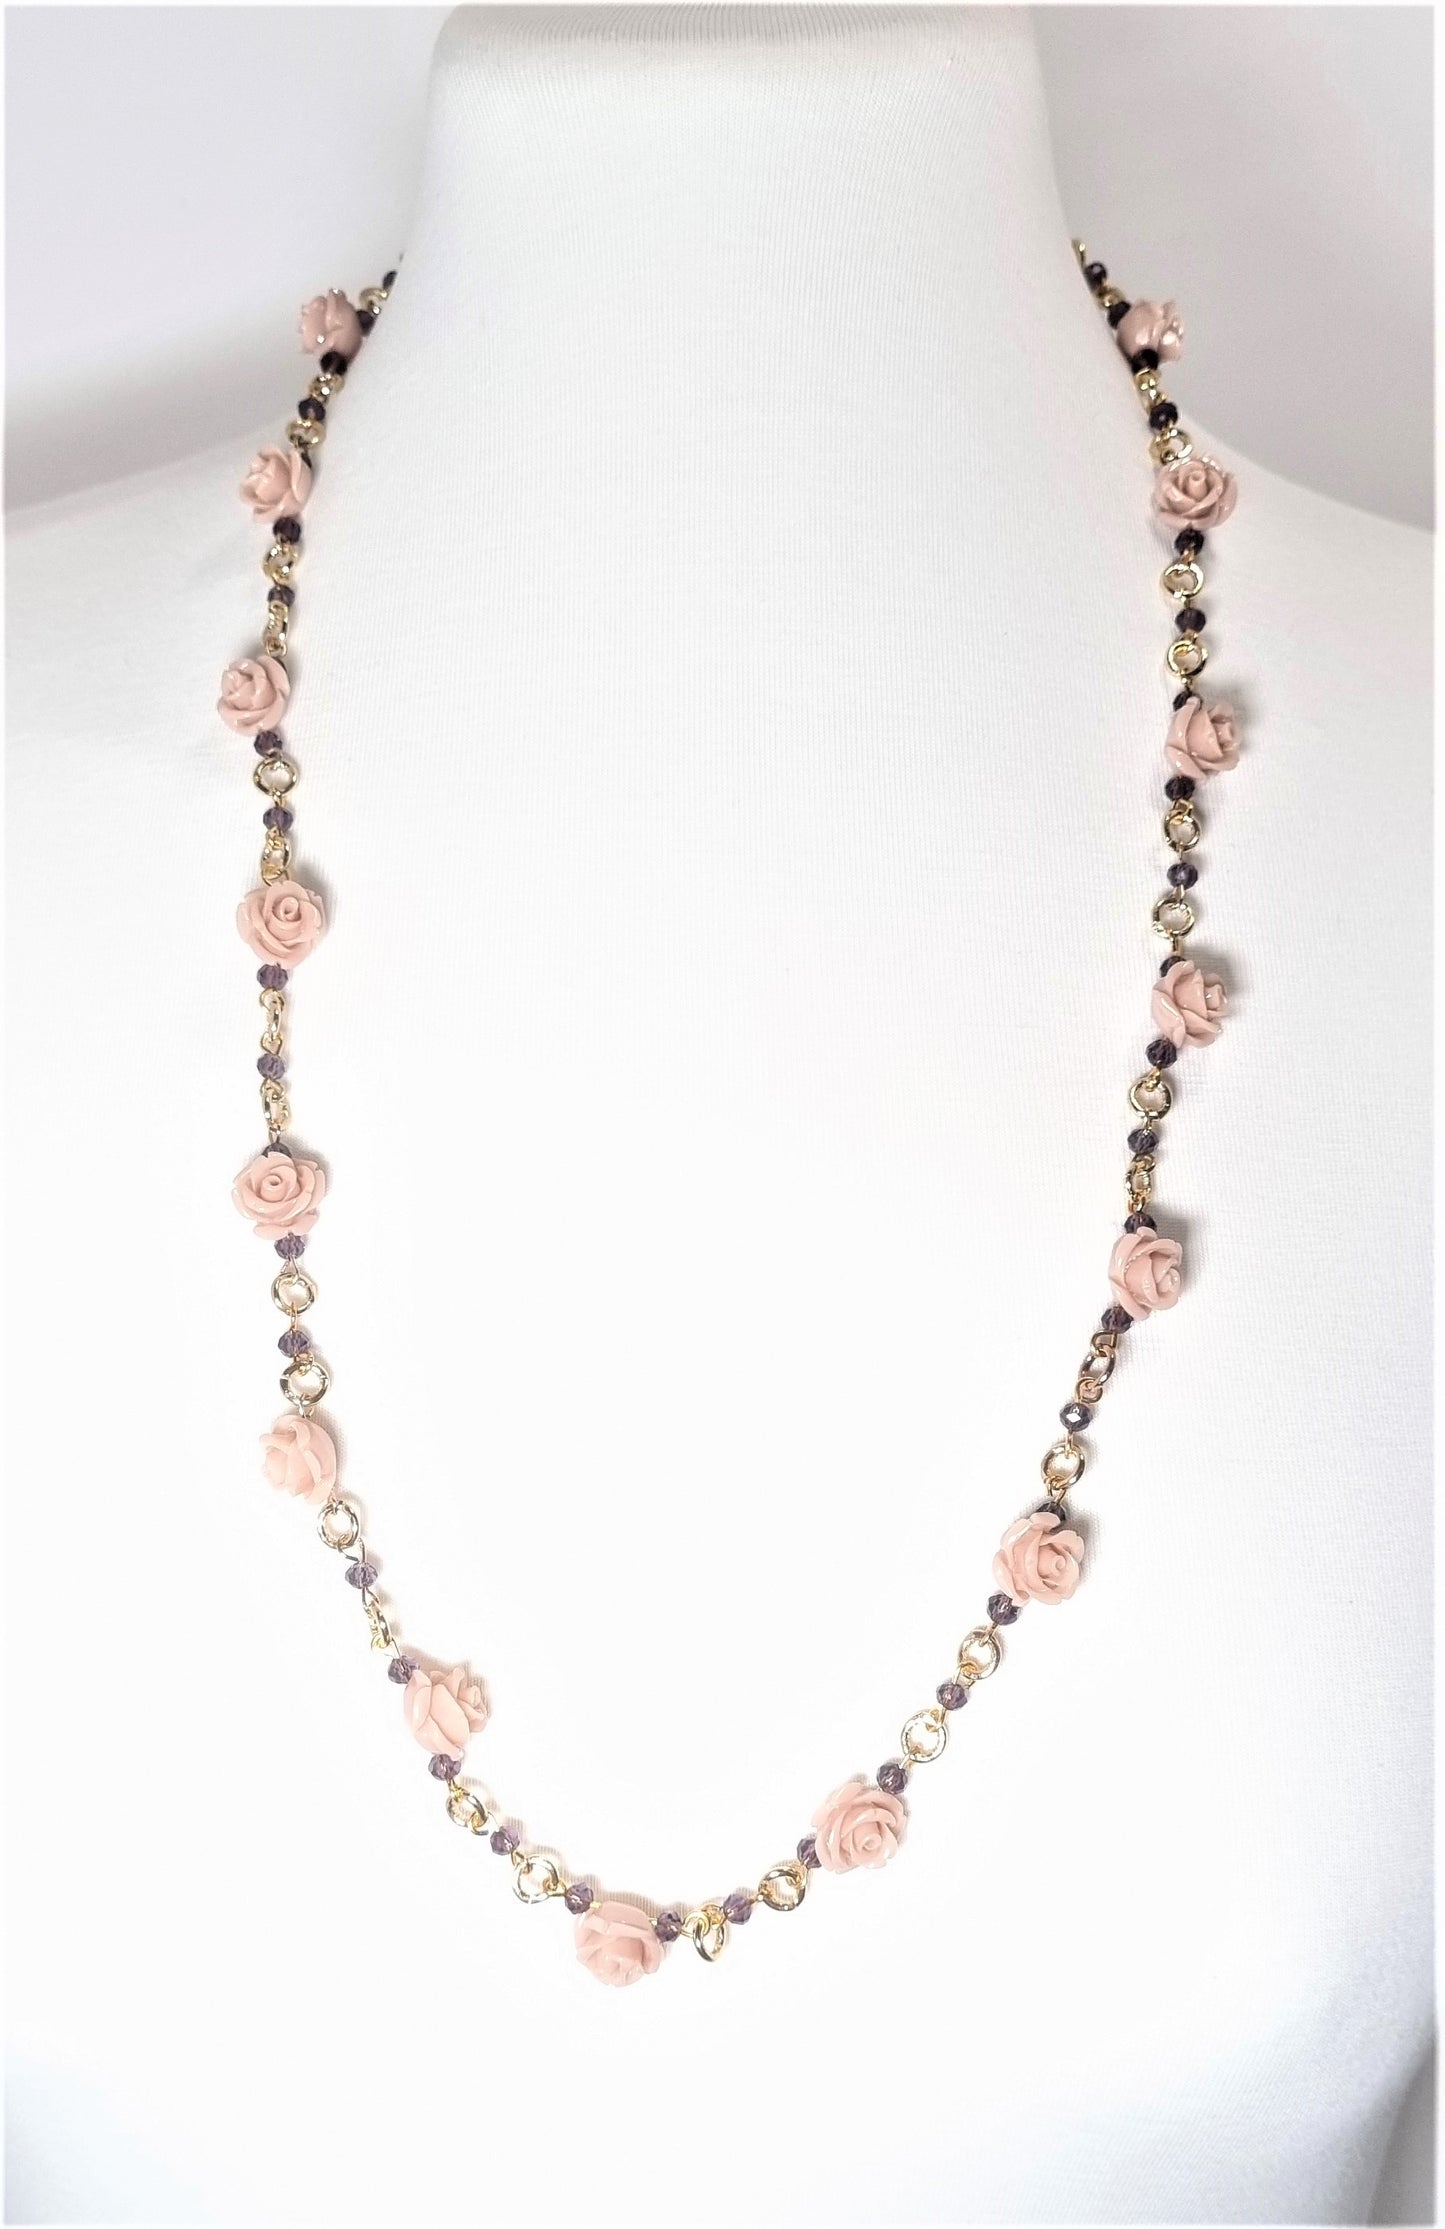 Collana LE ROSE .014 Un filo di maglie metallo dorato, piccoli cristalli violacei e piccole rose in resina color cipria.